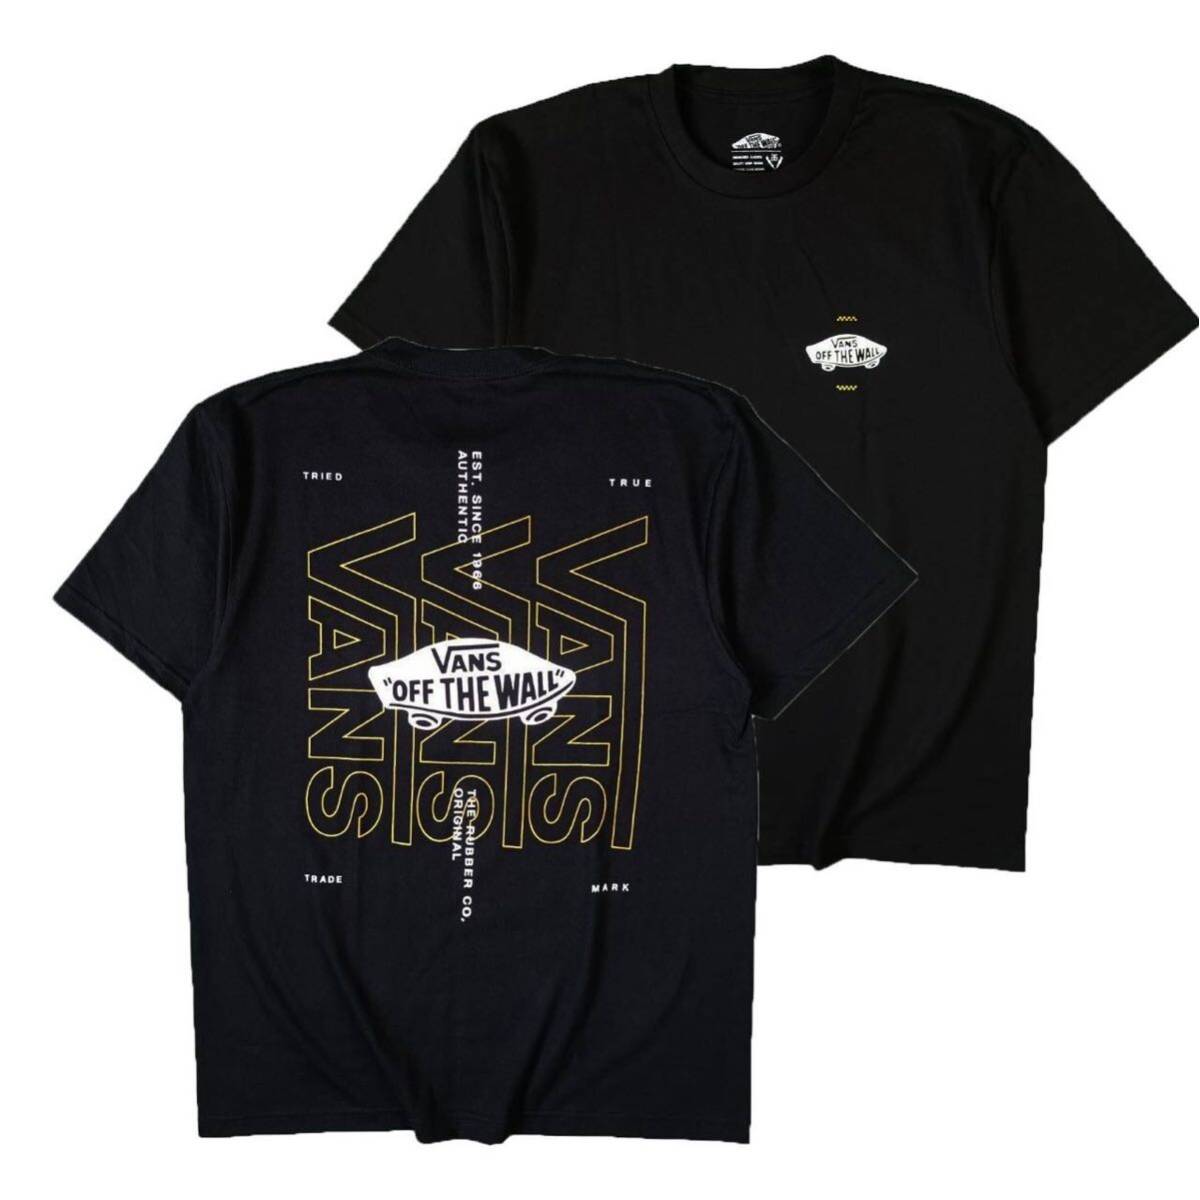 Tシャツ 半袖 バンズ VANS ストリート系 ロサンゼルス スケボー スケードボード カリフォルニア 黒 XLサイズ_画像1